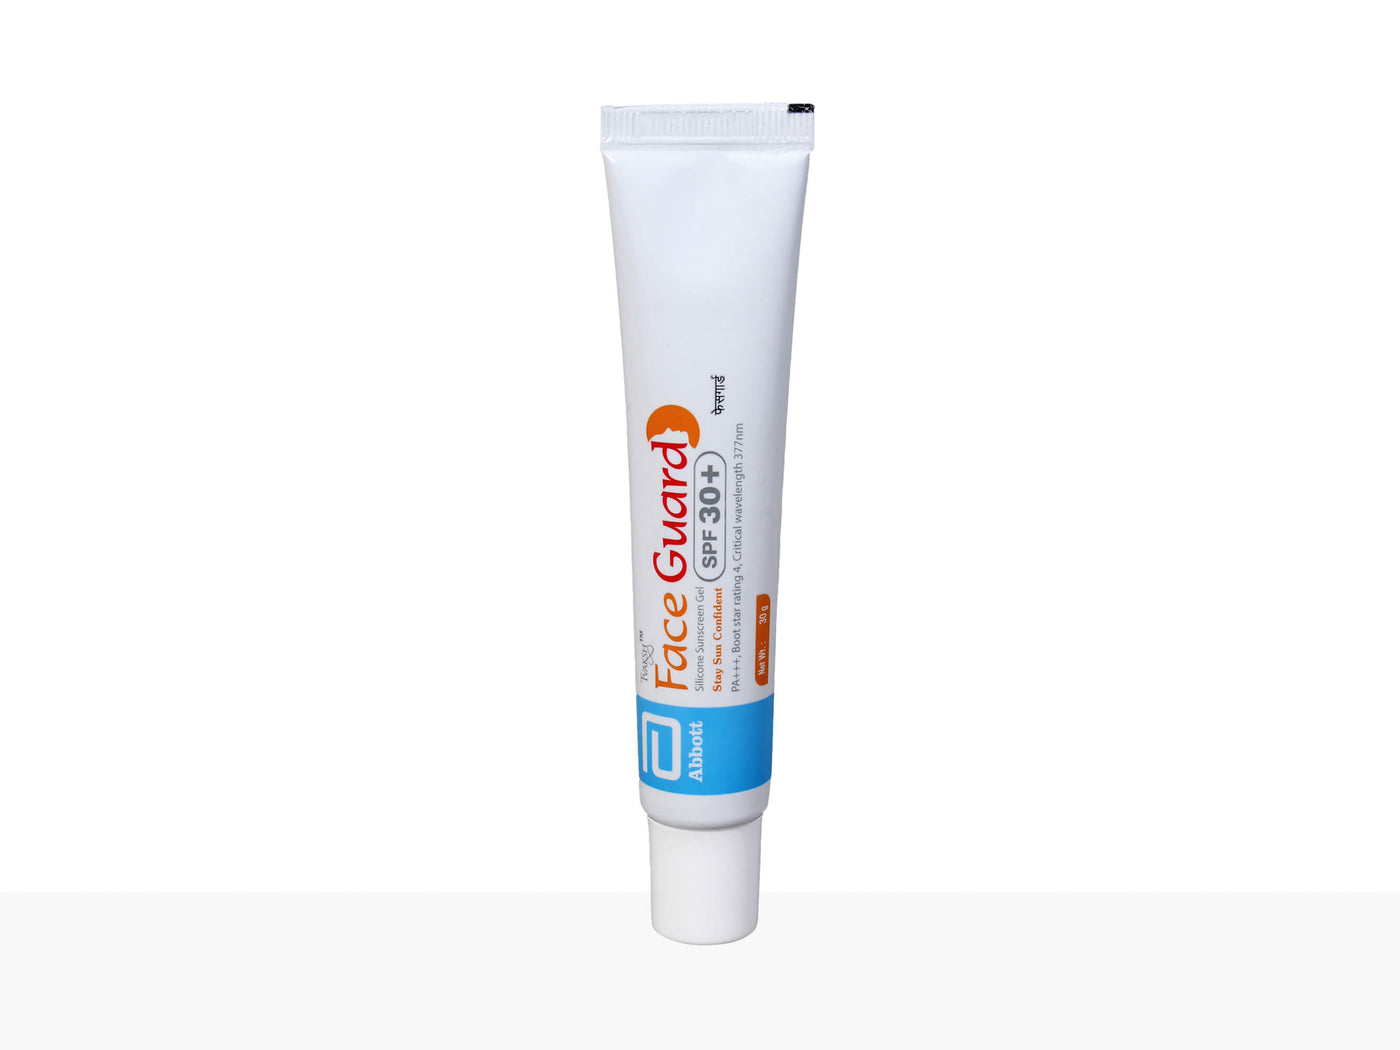 Tvaksh Face Guard Silicone Sunscreen Gel SPF 30 - Clinikally